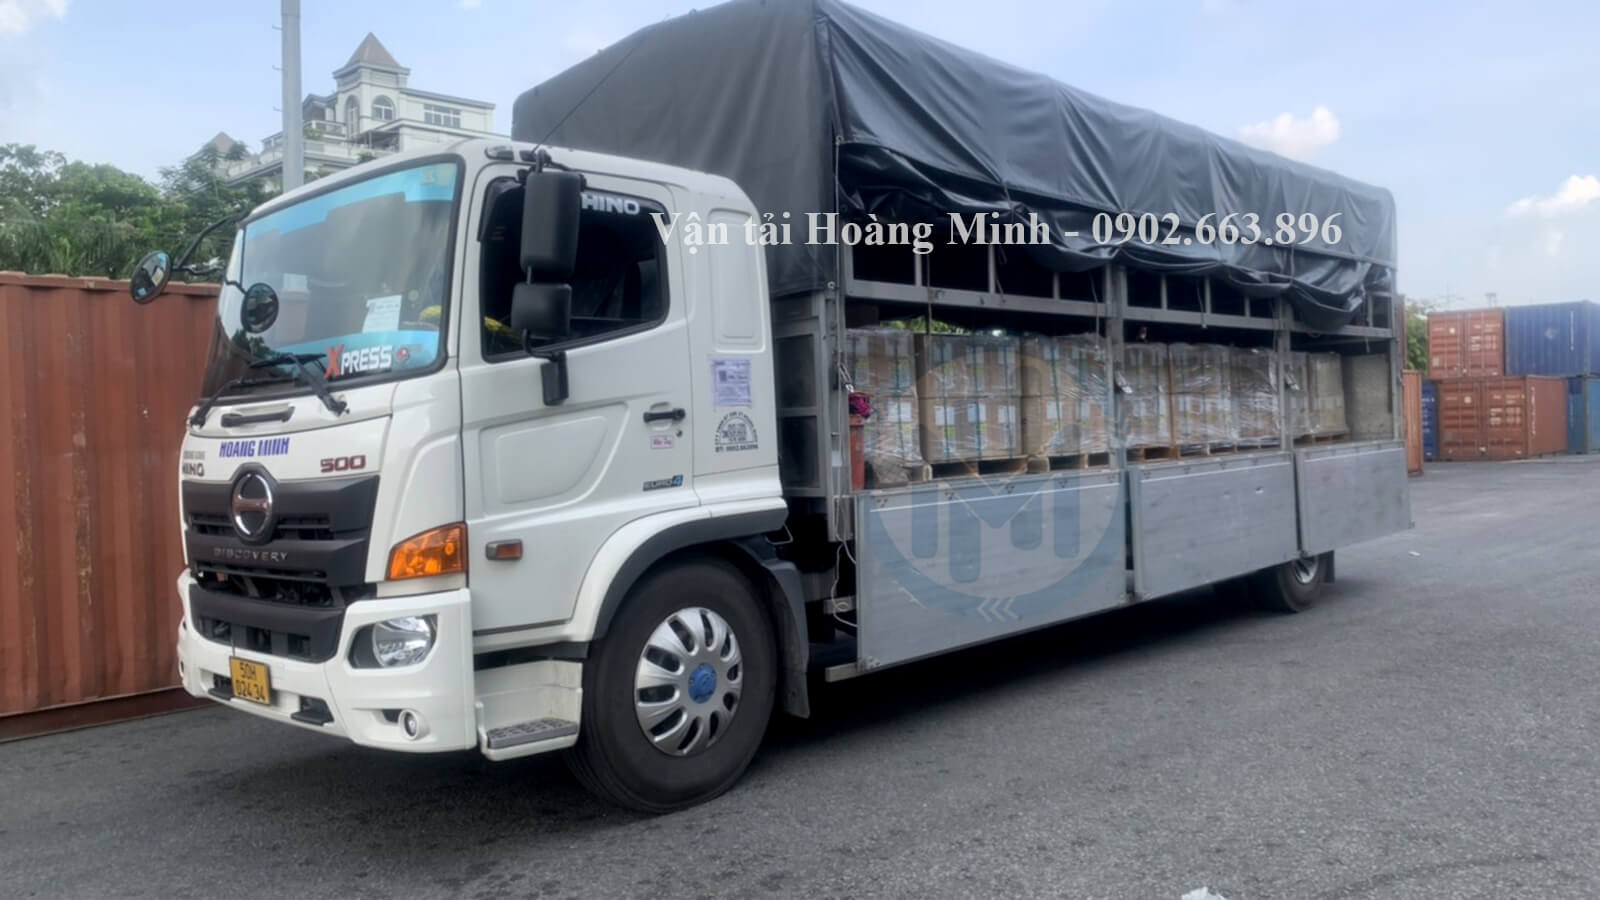 Vận tải Hoàng Minh cho thuê xe tải giá tốt nhất thị trường.jpg